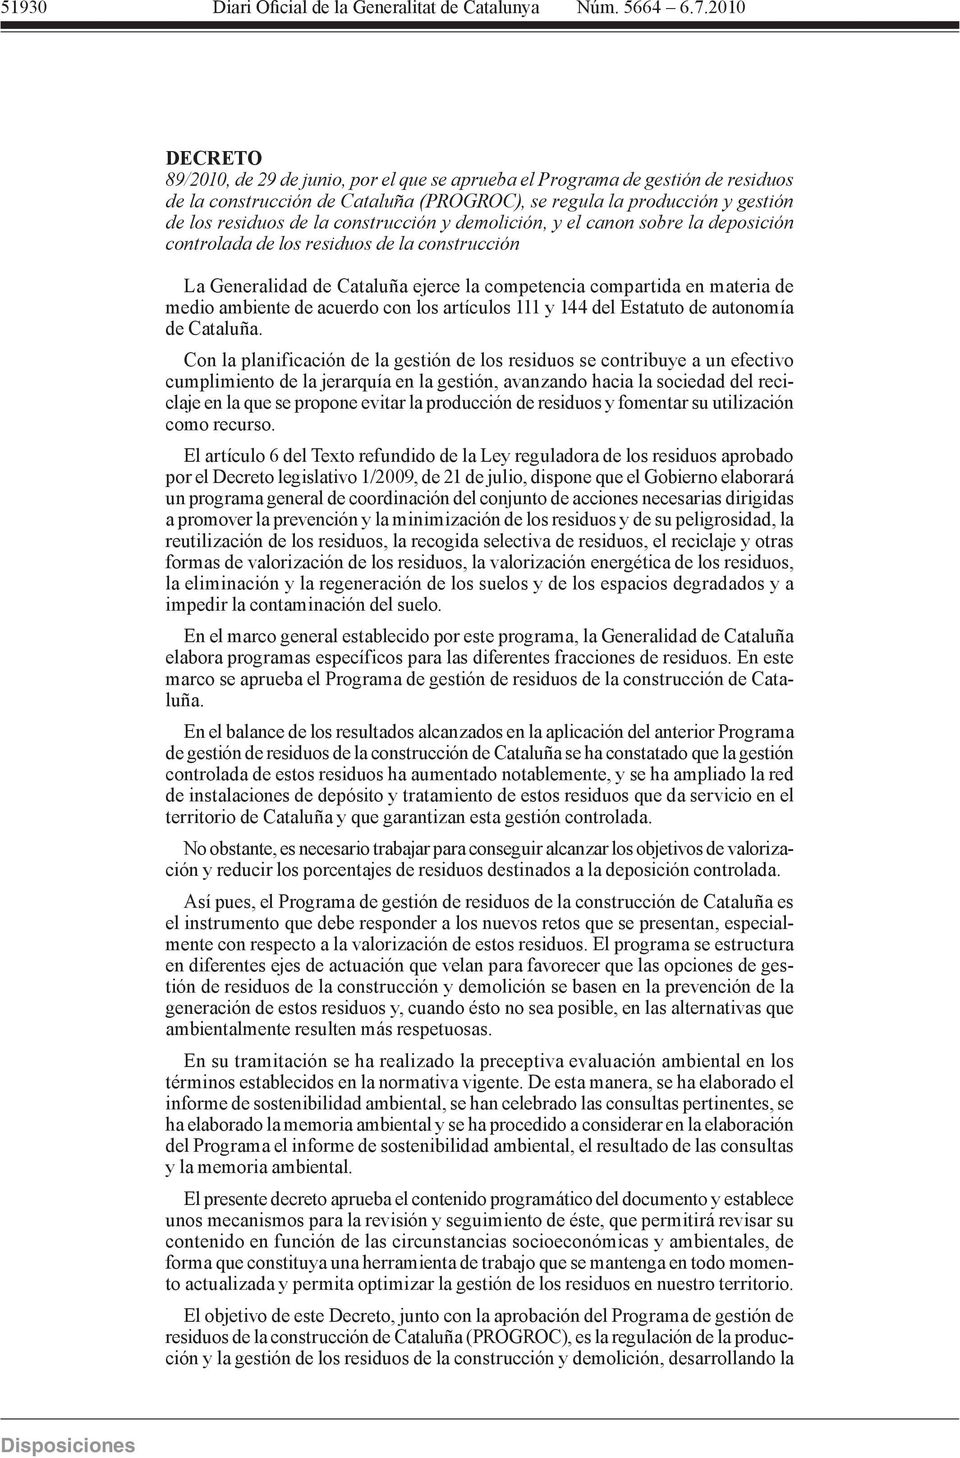 acuerdo con los artículos 111 y 144 del Estatuto de autonomía de Cataluña.